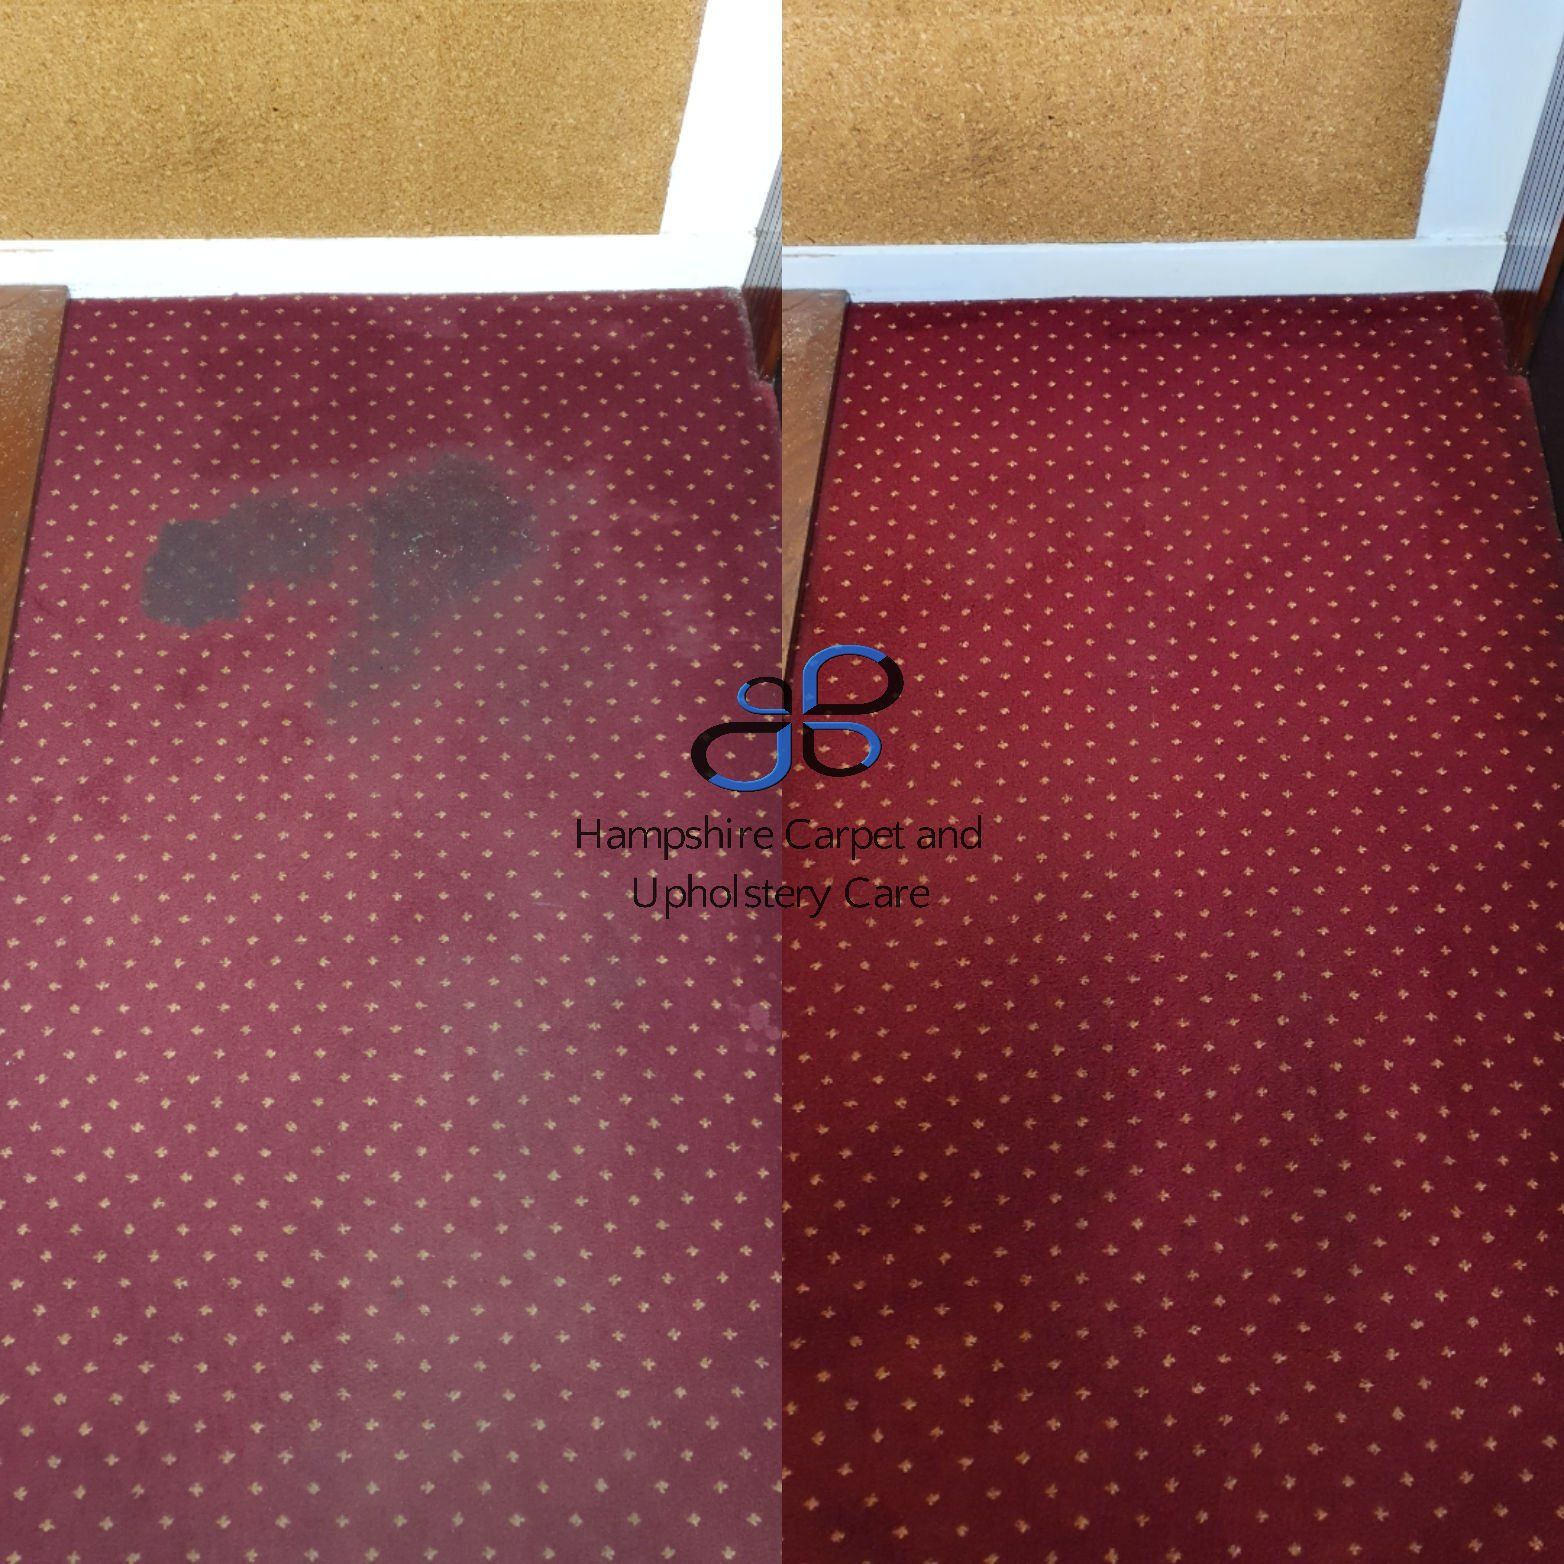 Carpet Stain Removal Southampton